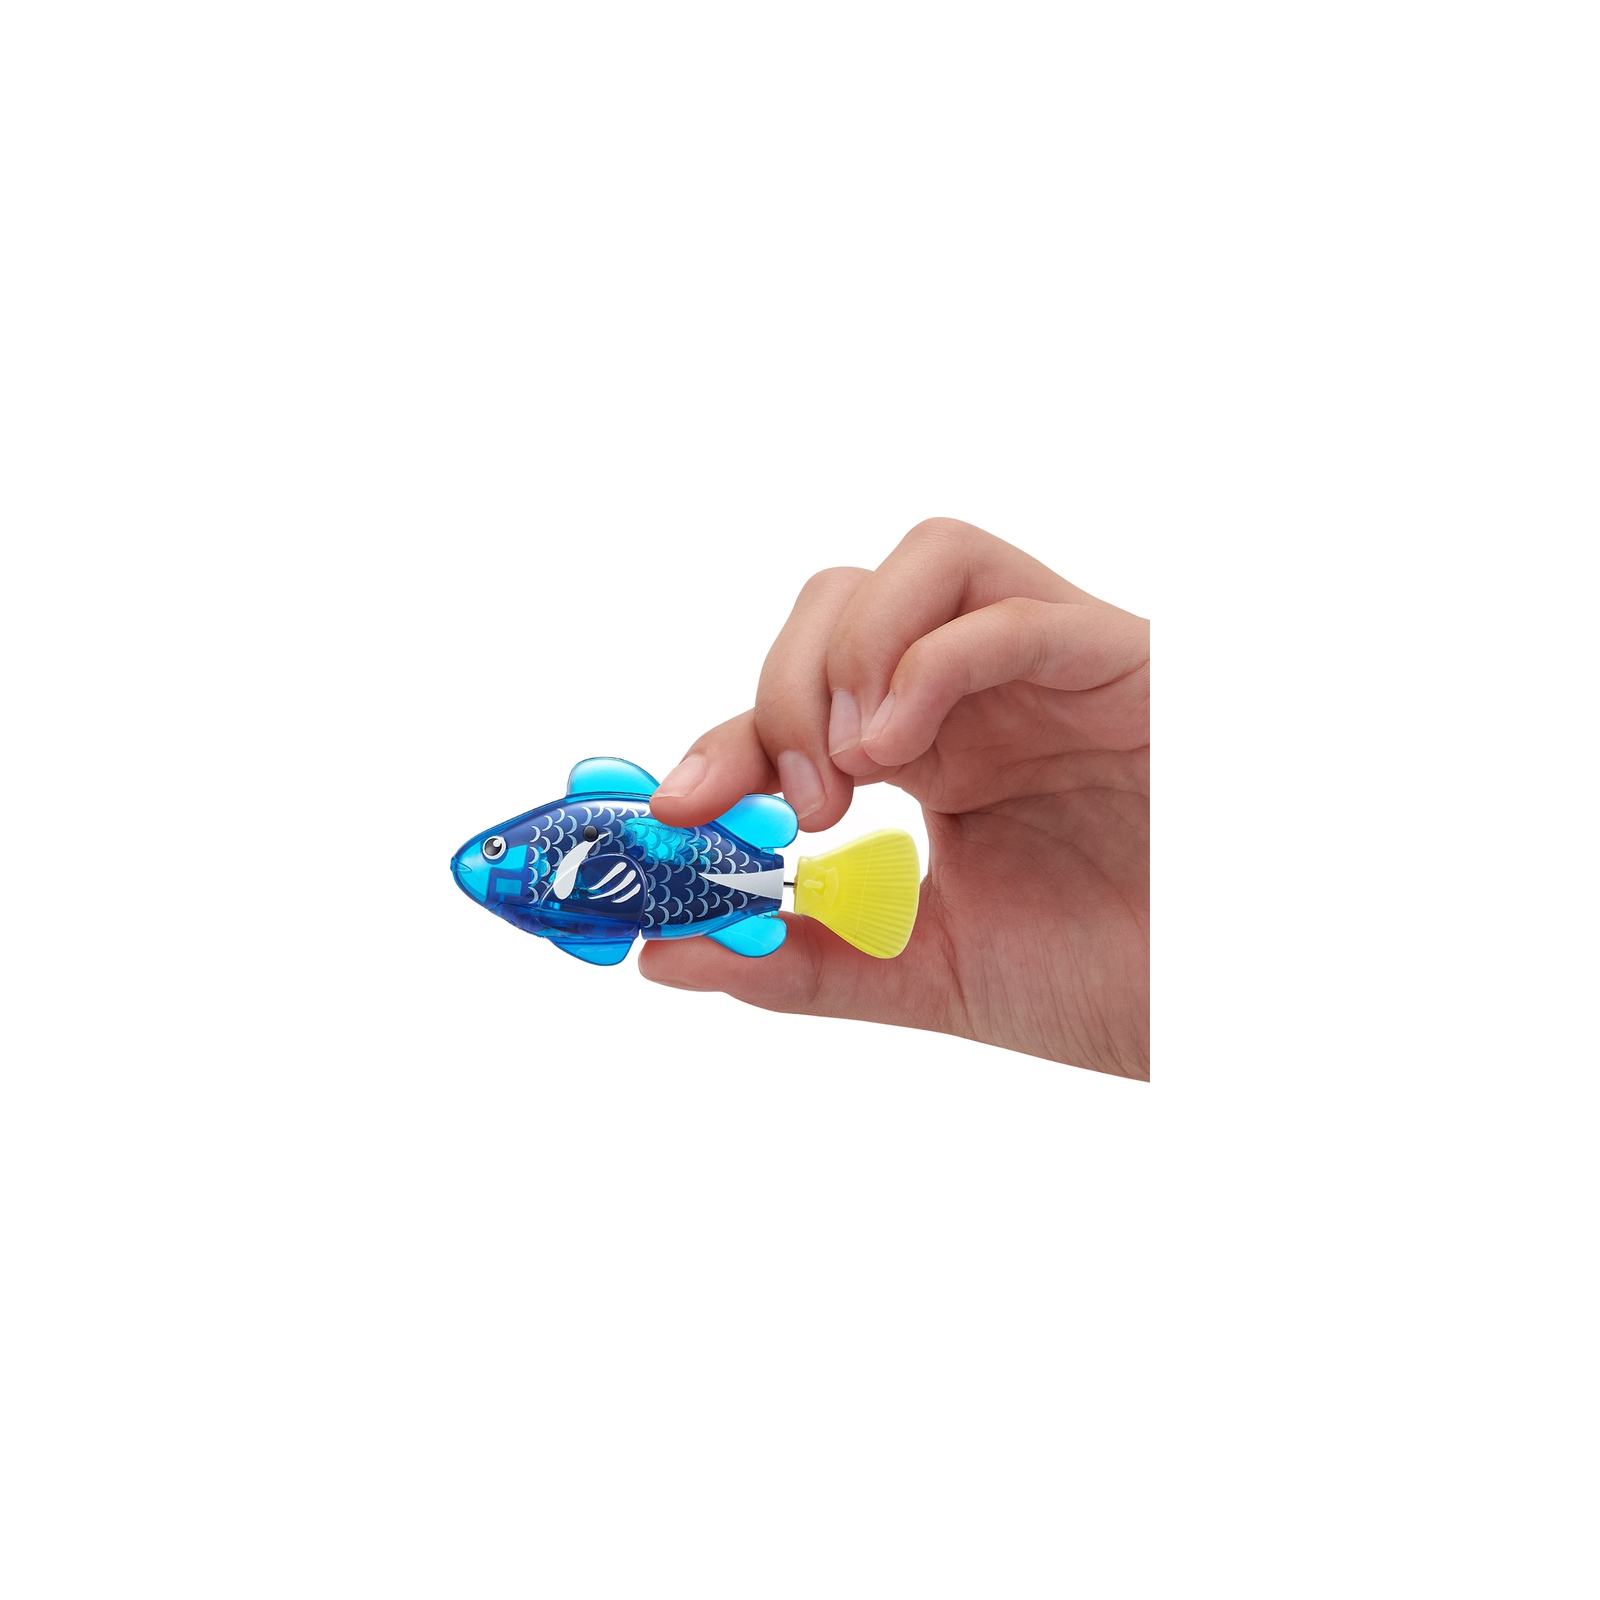 Интерактивная игрушка Pets & Robo Alive S3 - Роборыбка (синяя) (7191-4) изображение 4